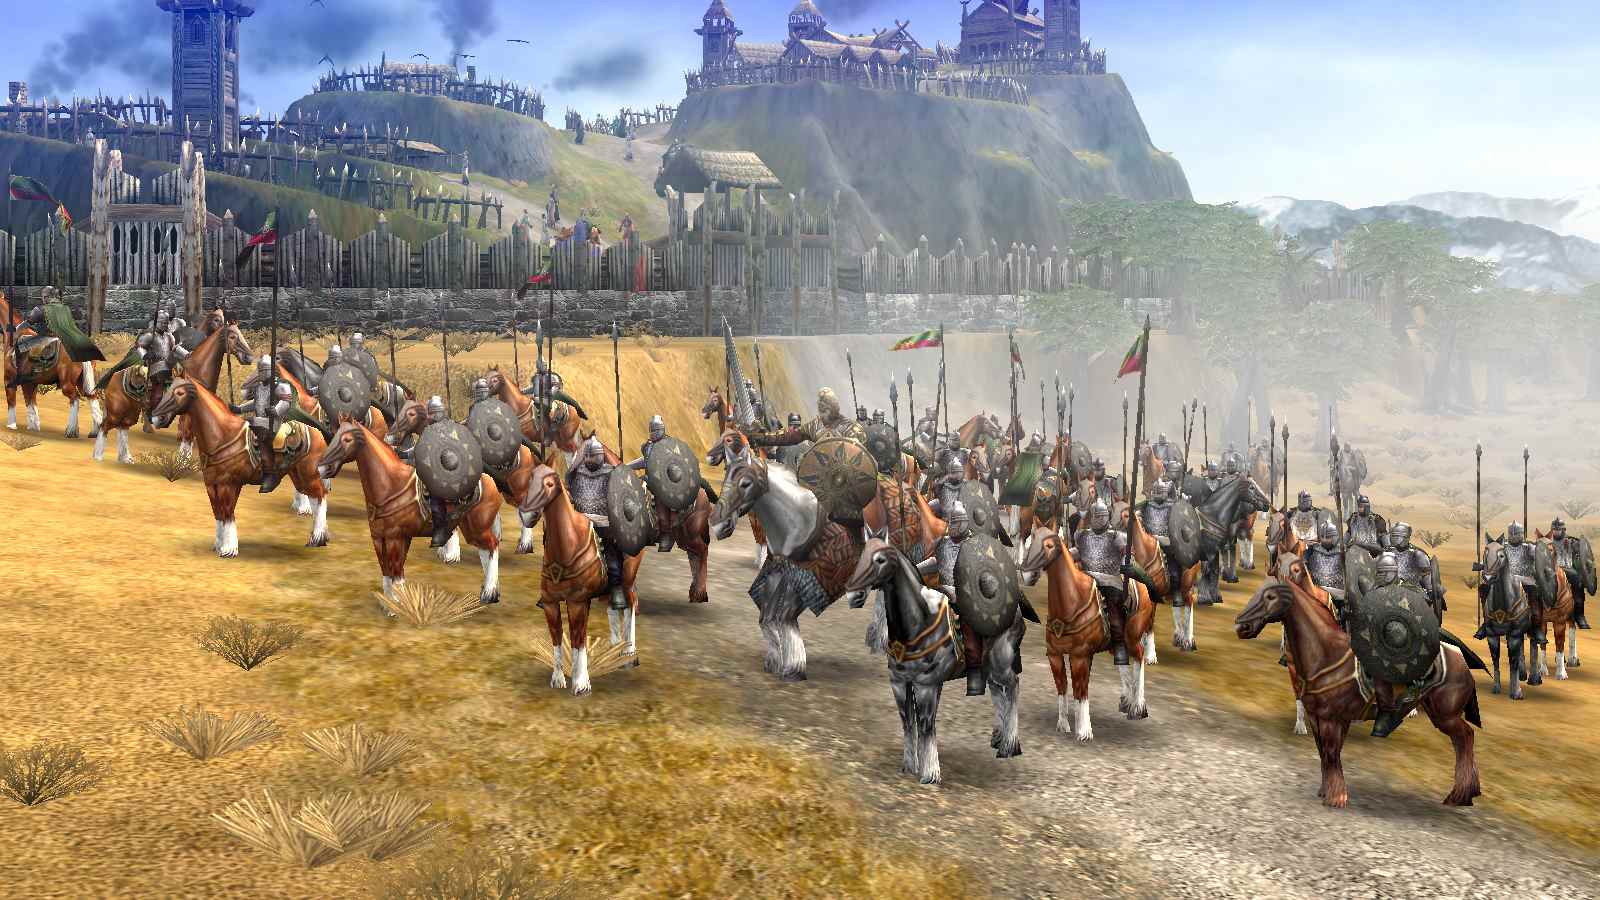 Cavalerie Rohan debout en formation dans la bataille pour la Terre du Milieu